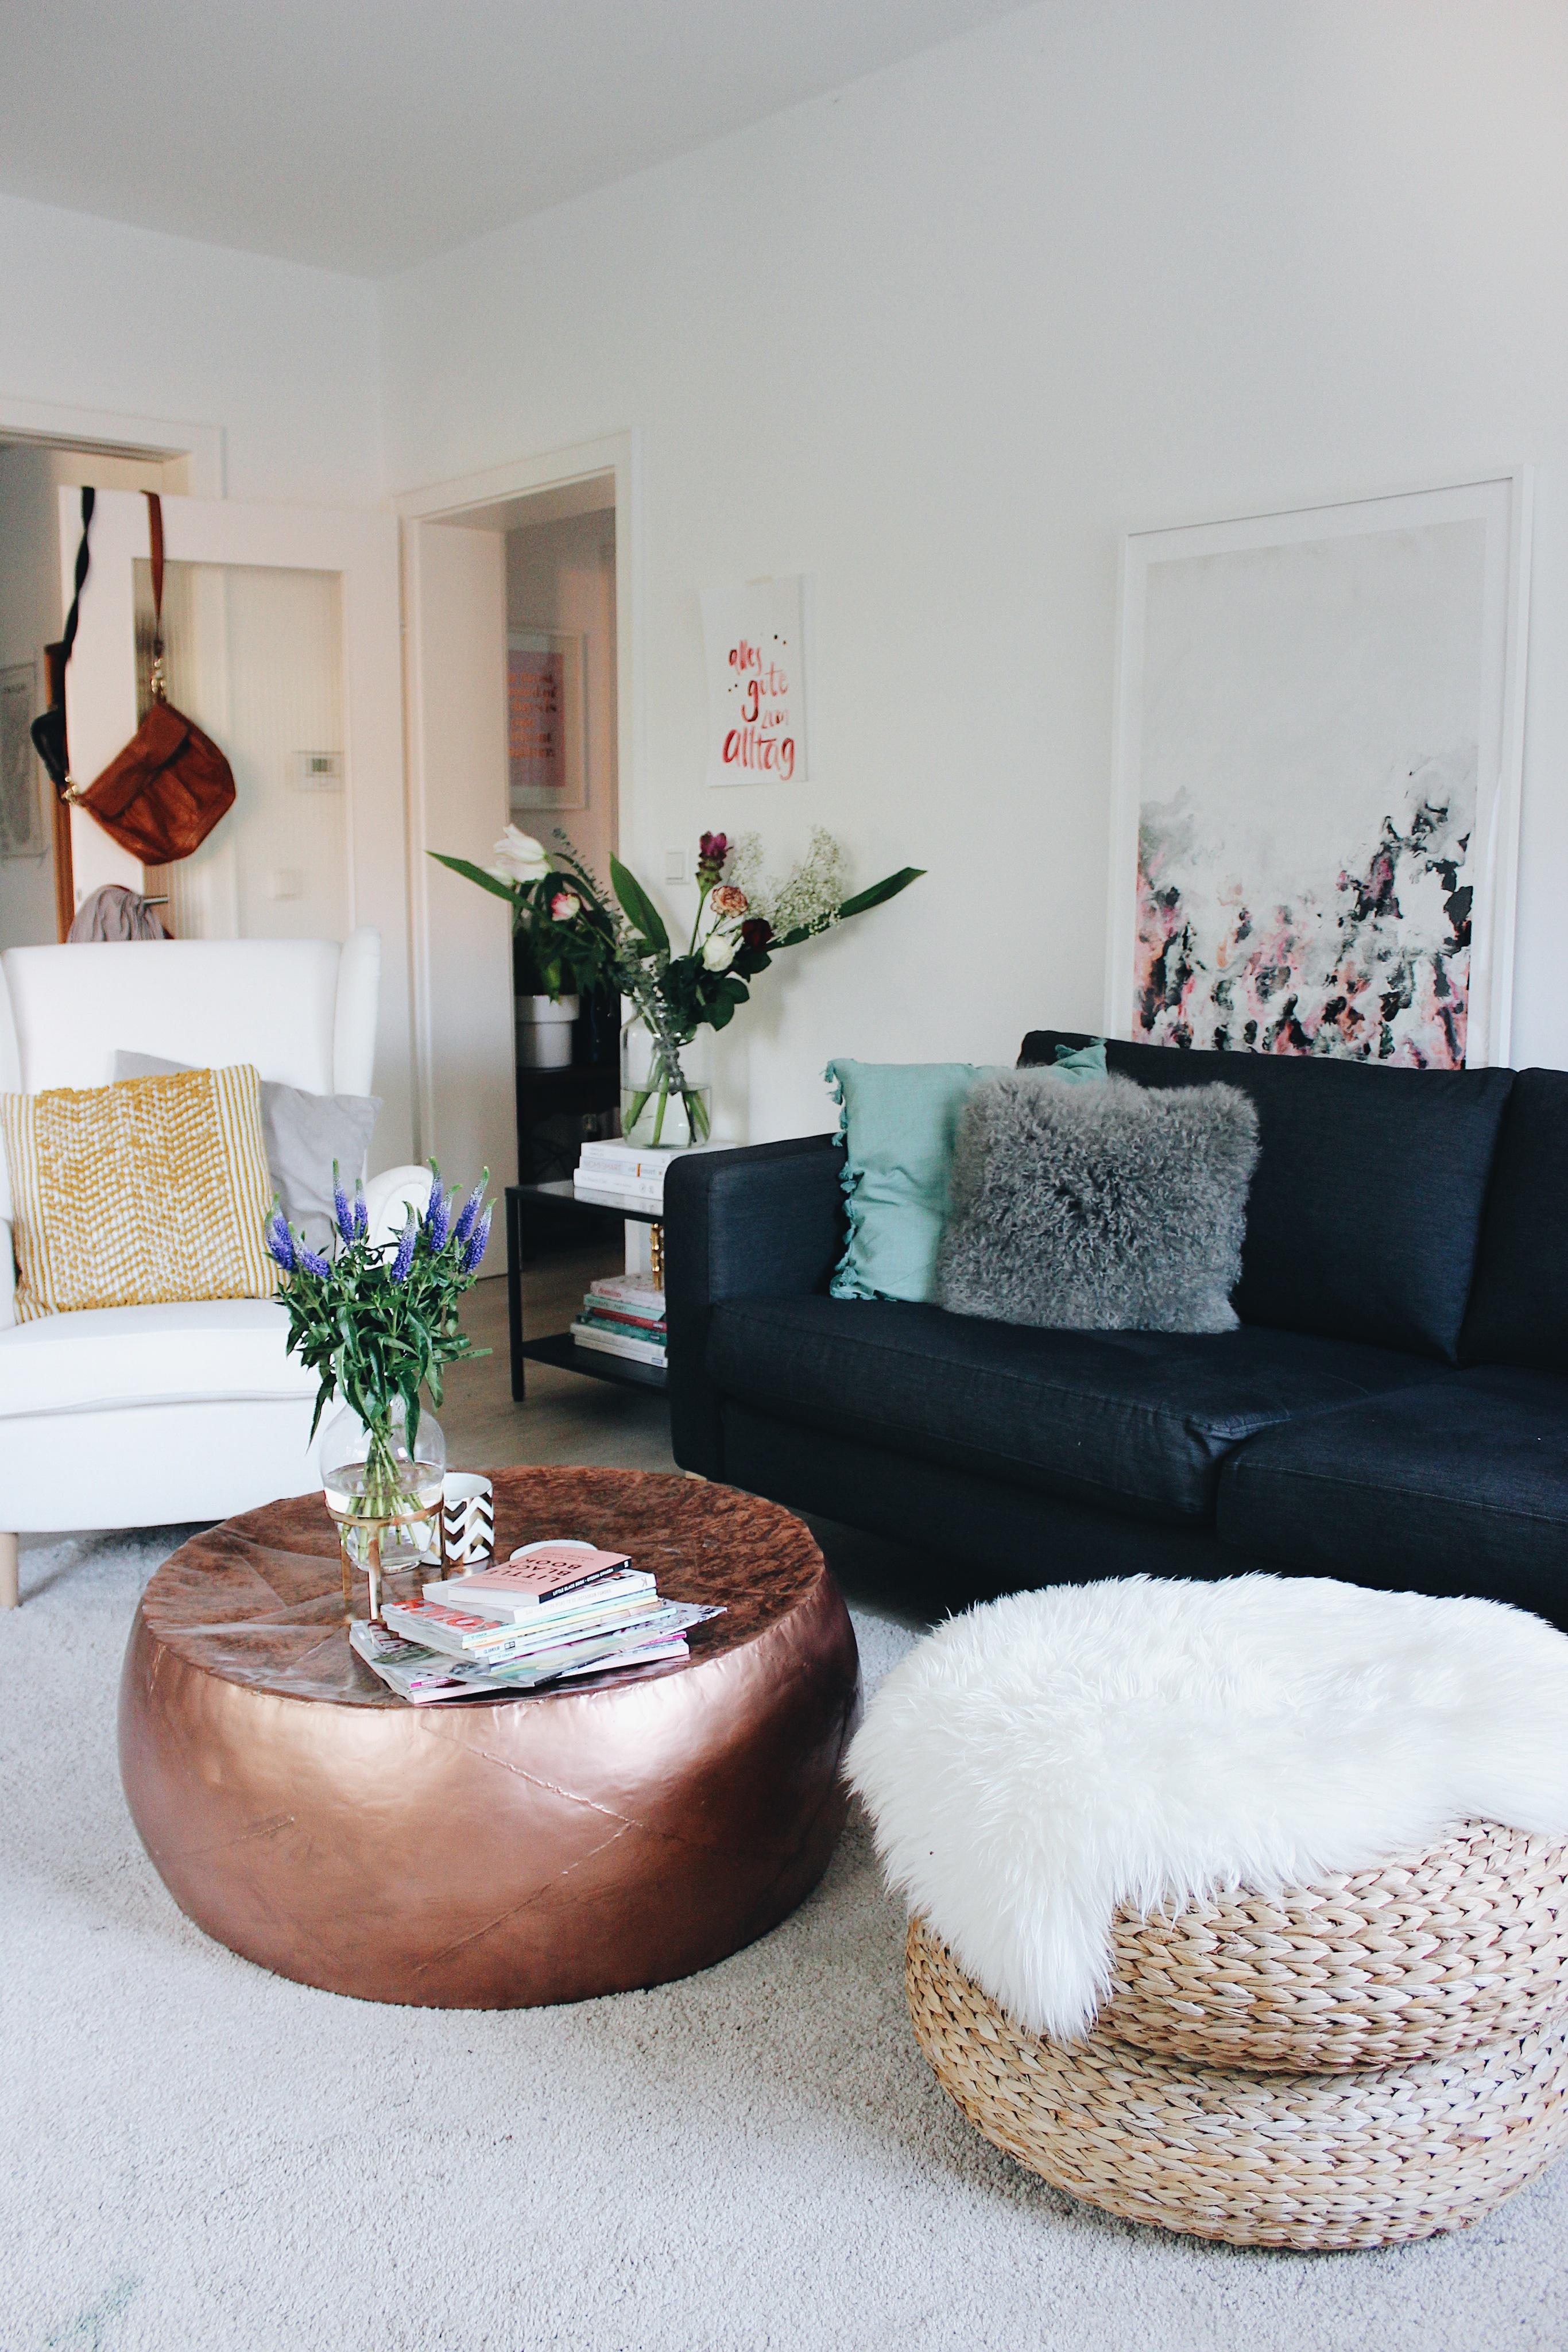 Letztes Wochenende wurde bei mir mal wieder umgeräumt. ; )

#wohnzimmer #couch #couchstyle #ikea #cosy 